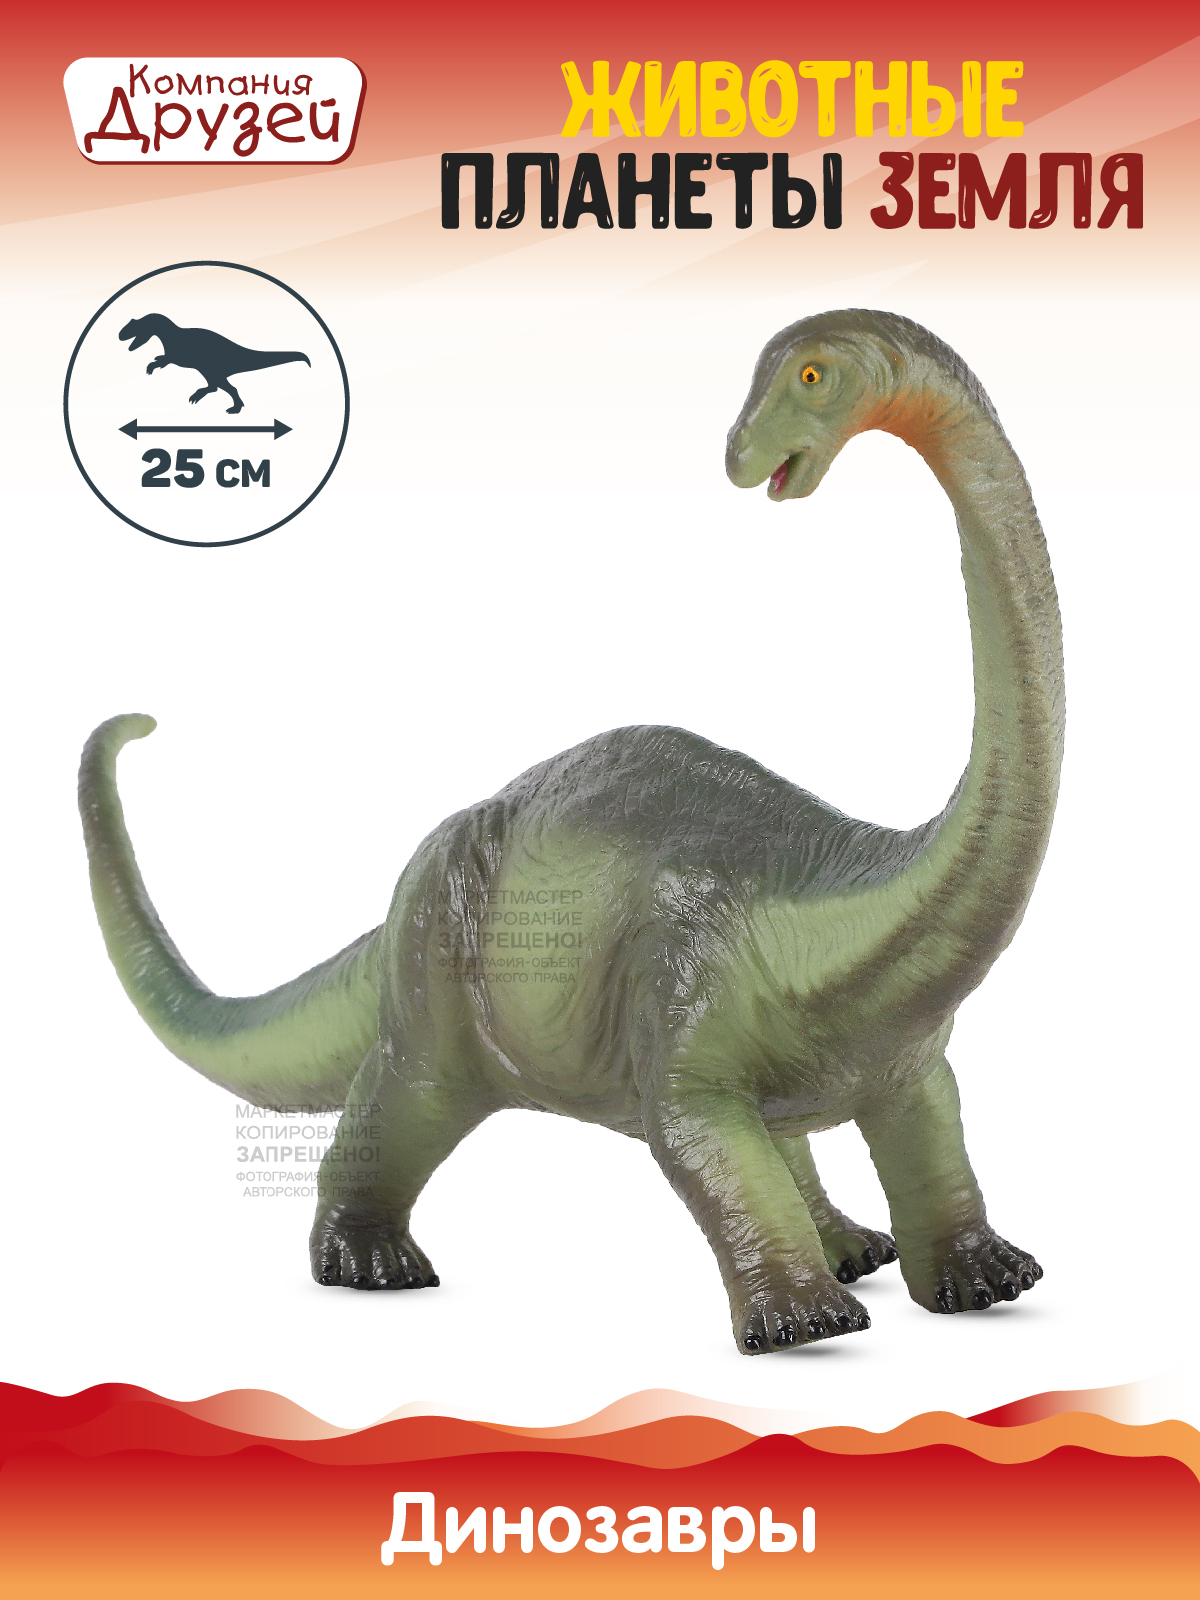 Фигурка Динозавр из серии Животные планеты Земля Компания друзей зеленый JB0208314 пазл фигурный животные нашей планеты в деревянной коробке 50 деталей